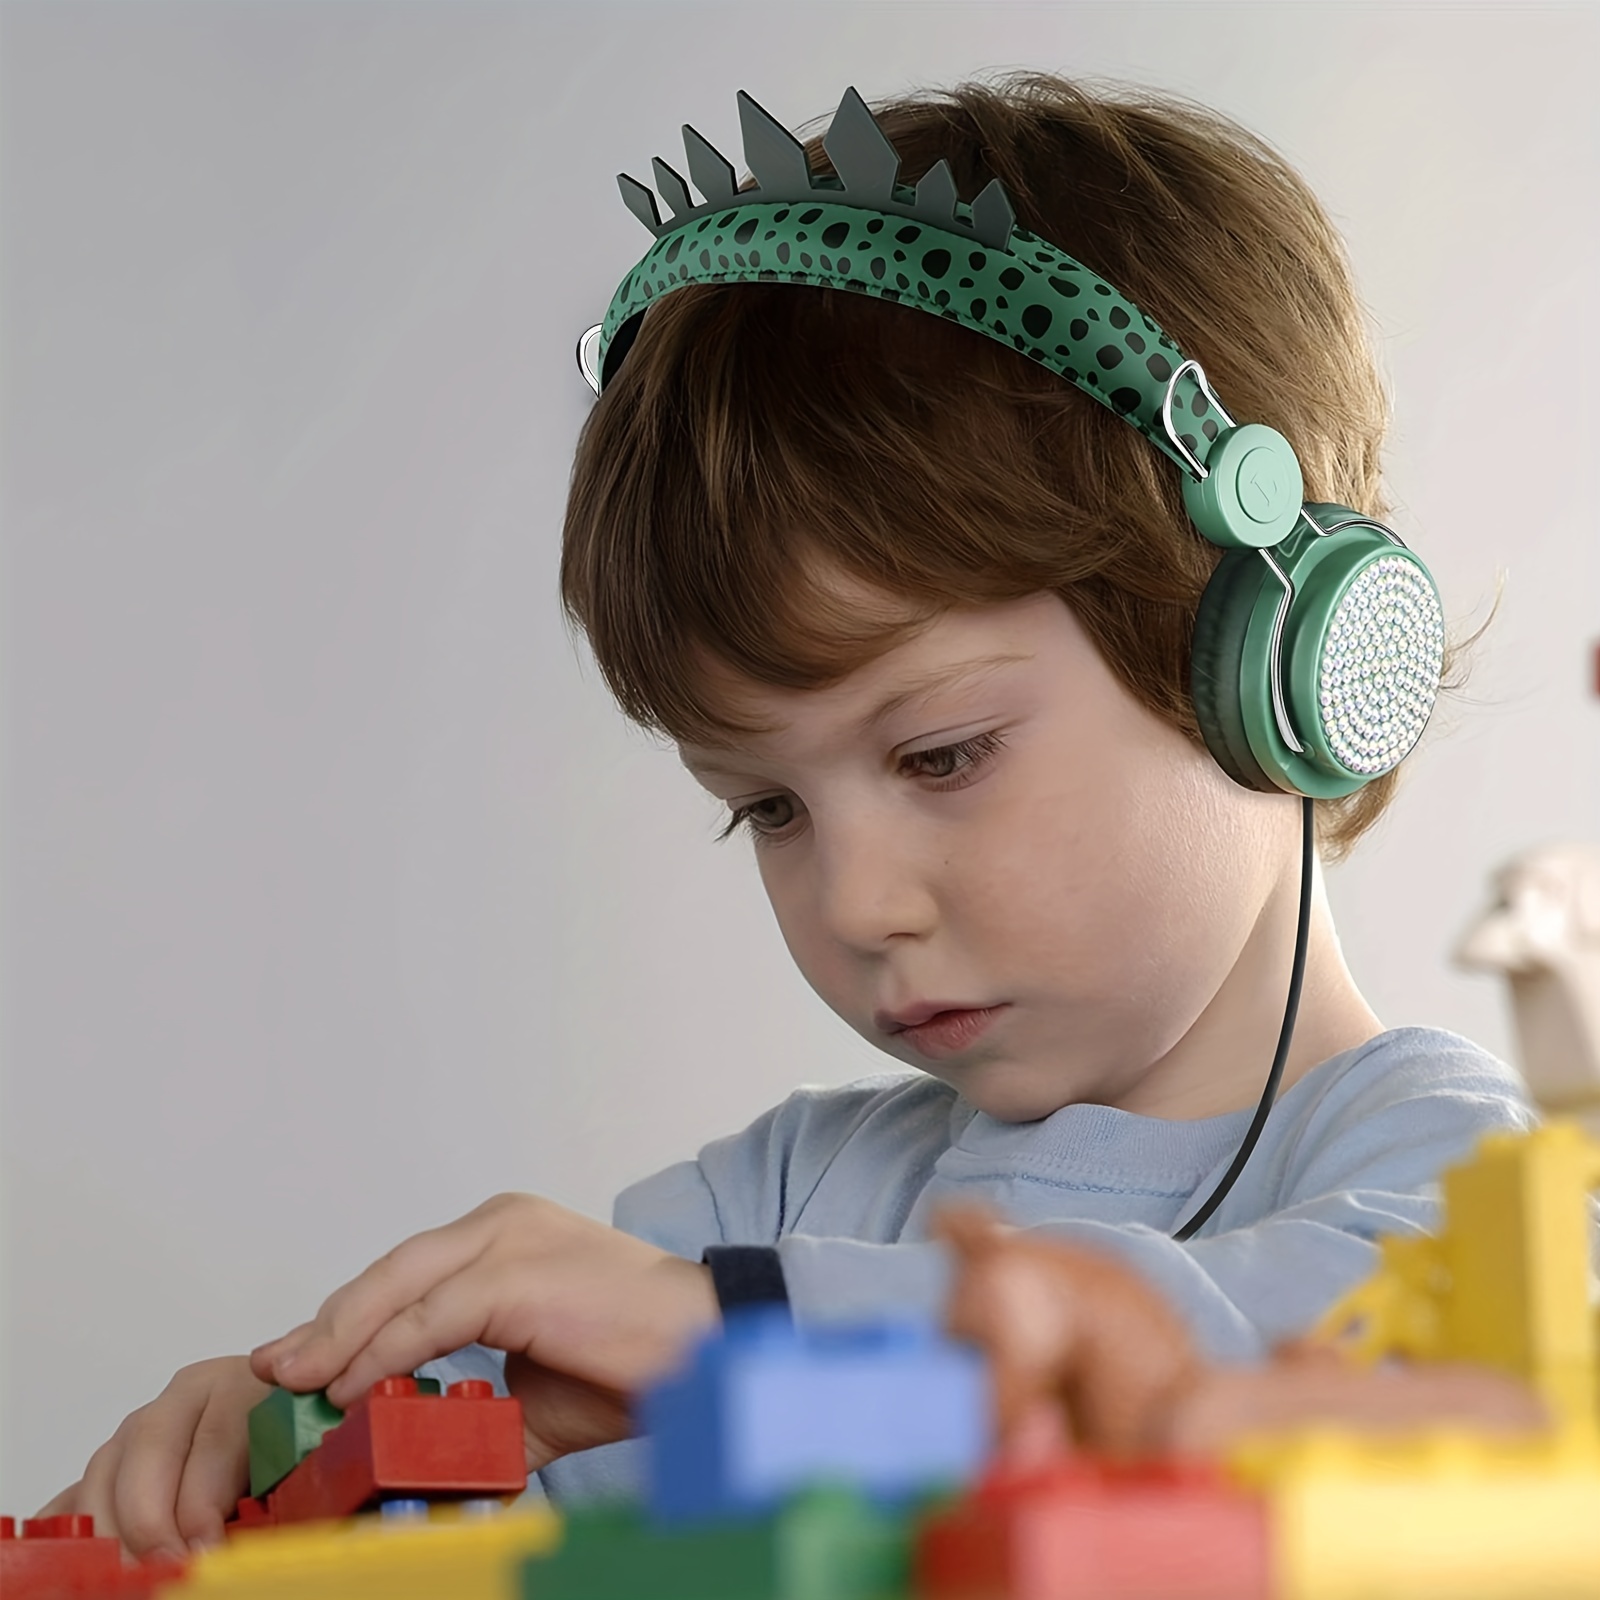 Link Dream Auriculares Bluetooth para niños con micrófono para la escuela,  auriculares inalámbricos para niños pequeños con luces LED, compatibles con